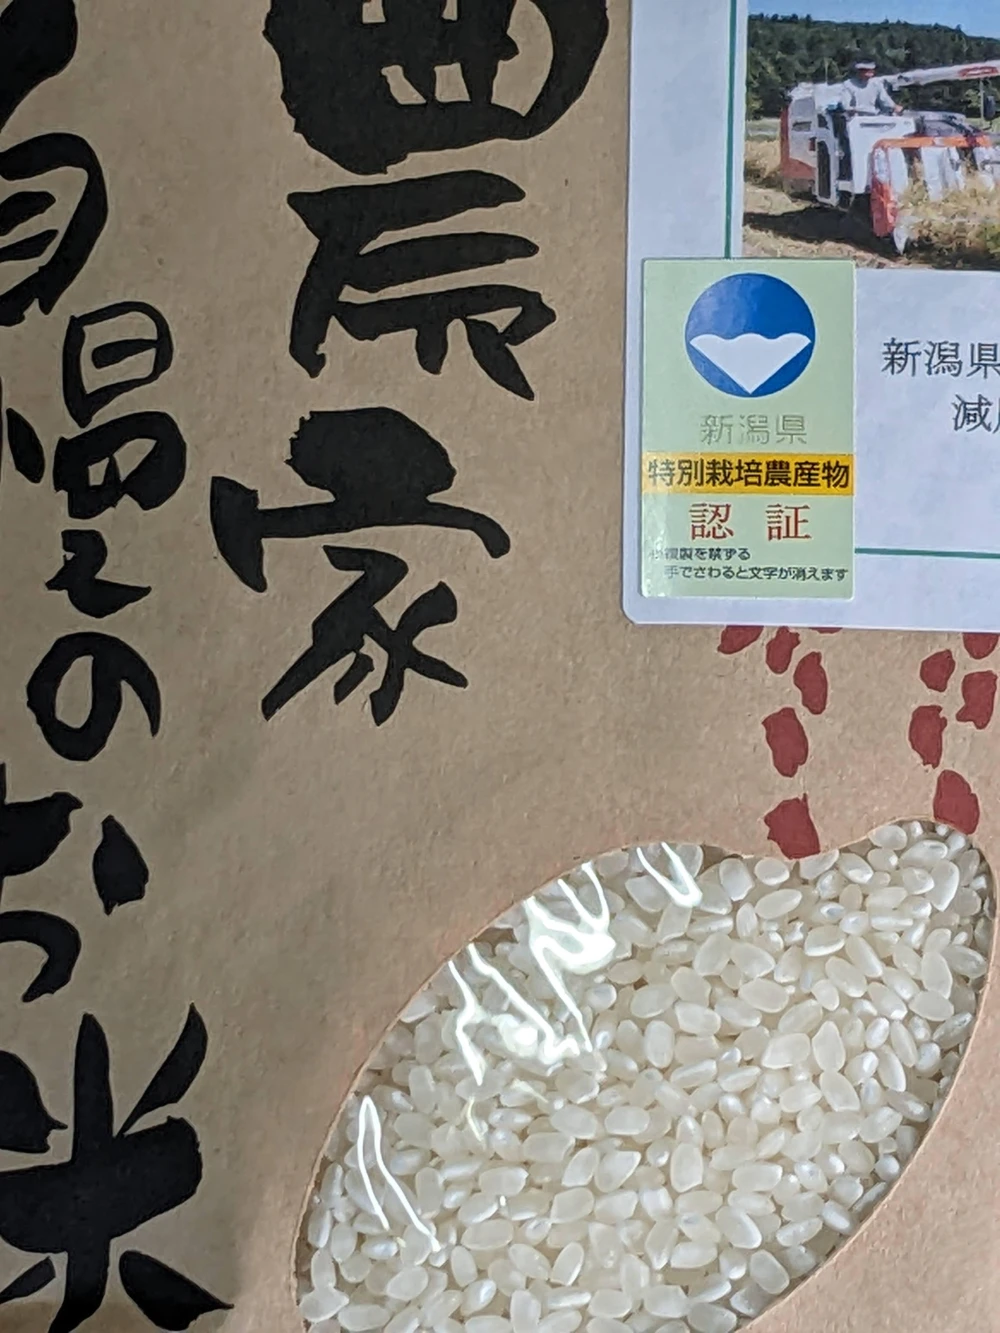 新潟県産 コシヒカリ R5新米 玄米 5kg 有機農法 特別栽培米